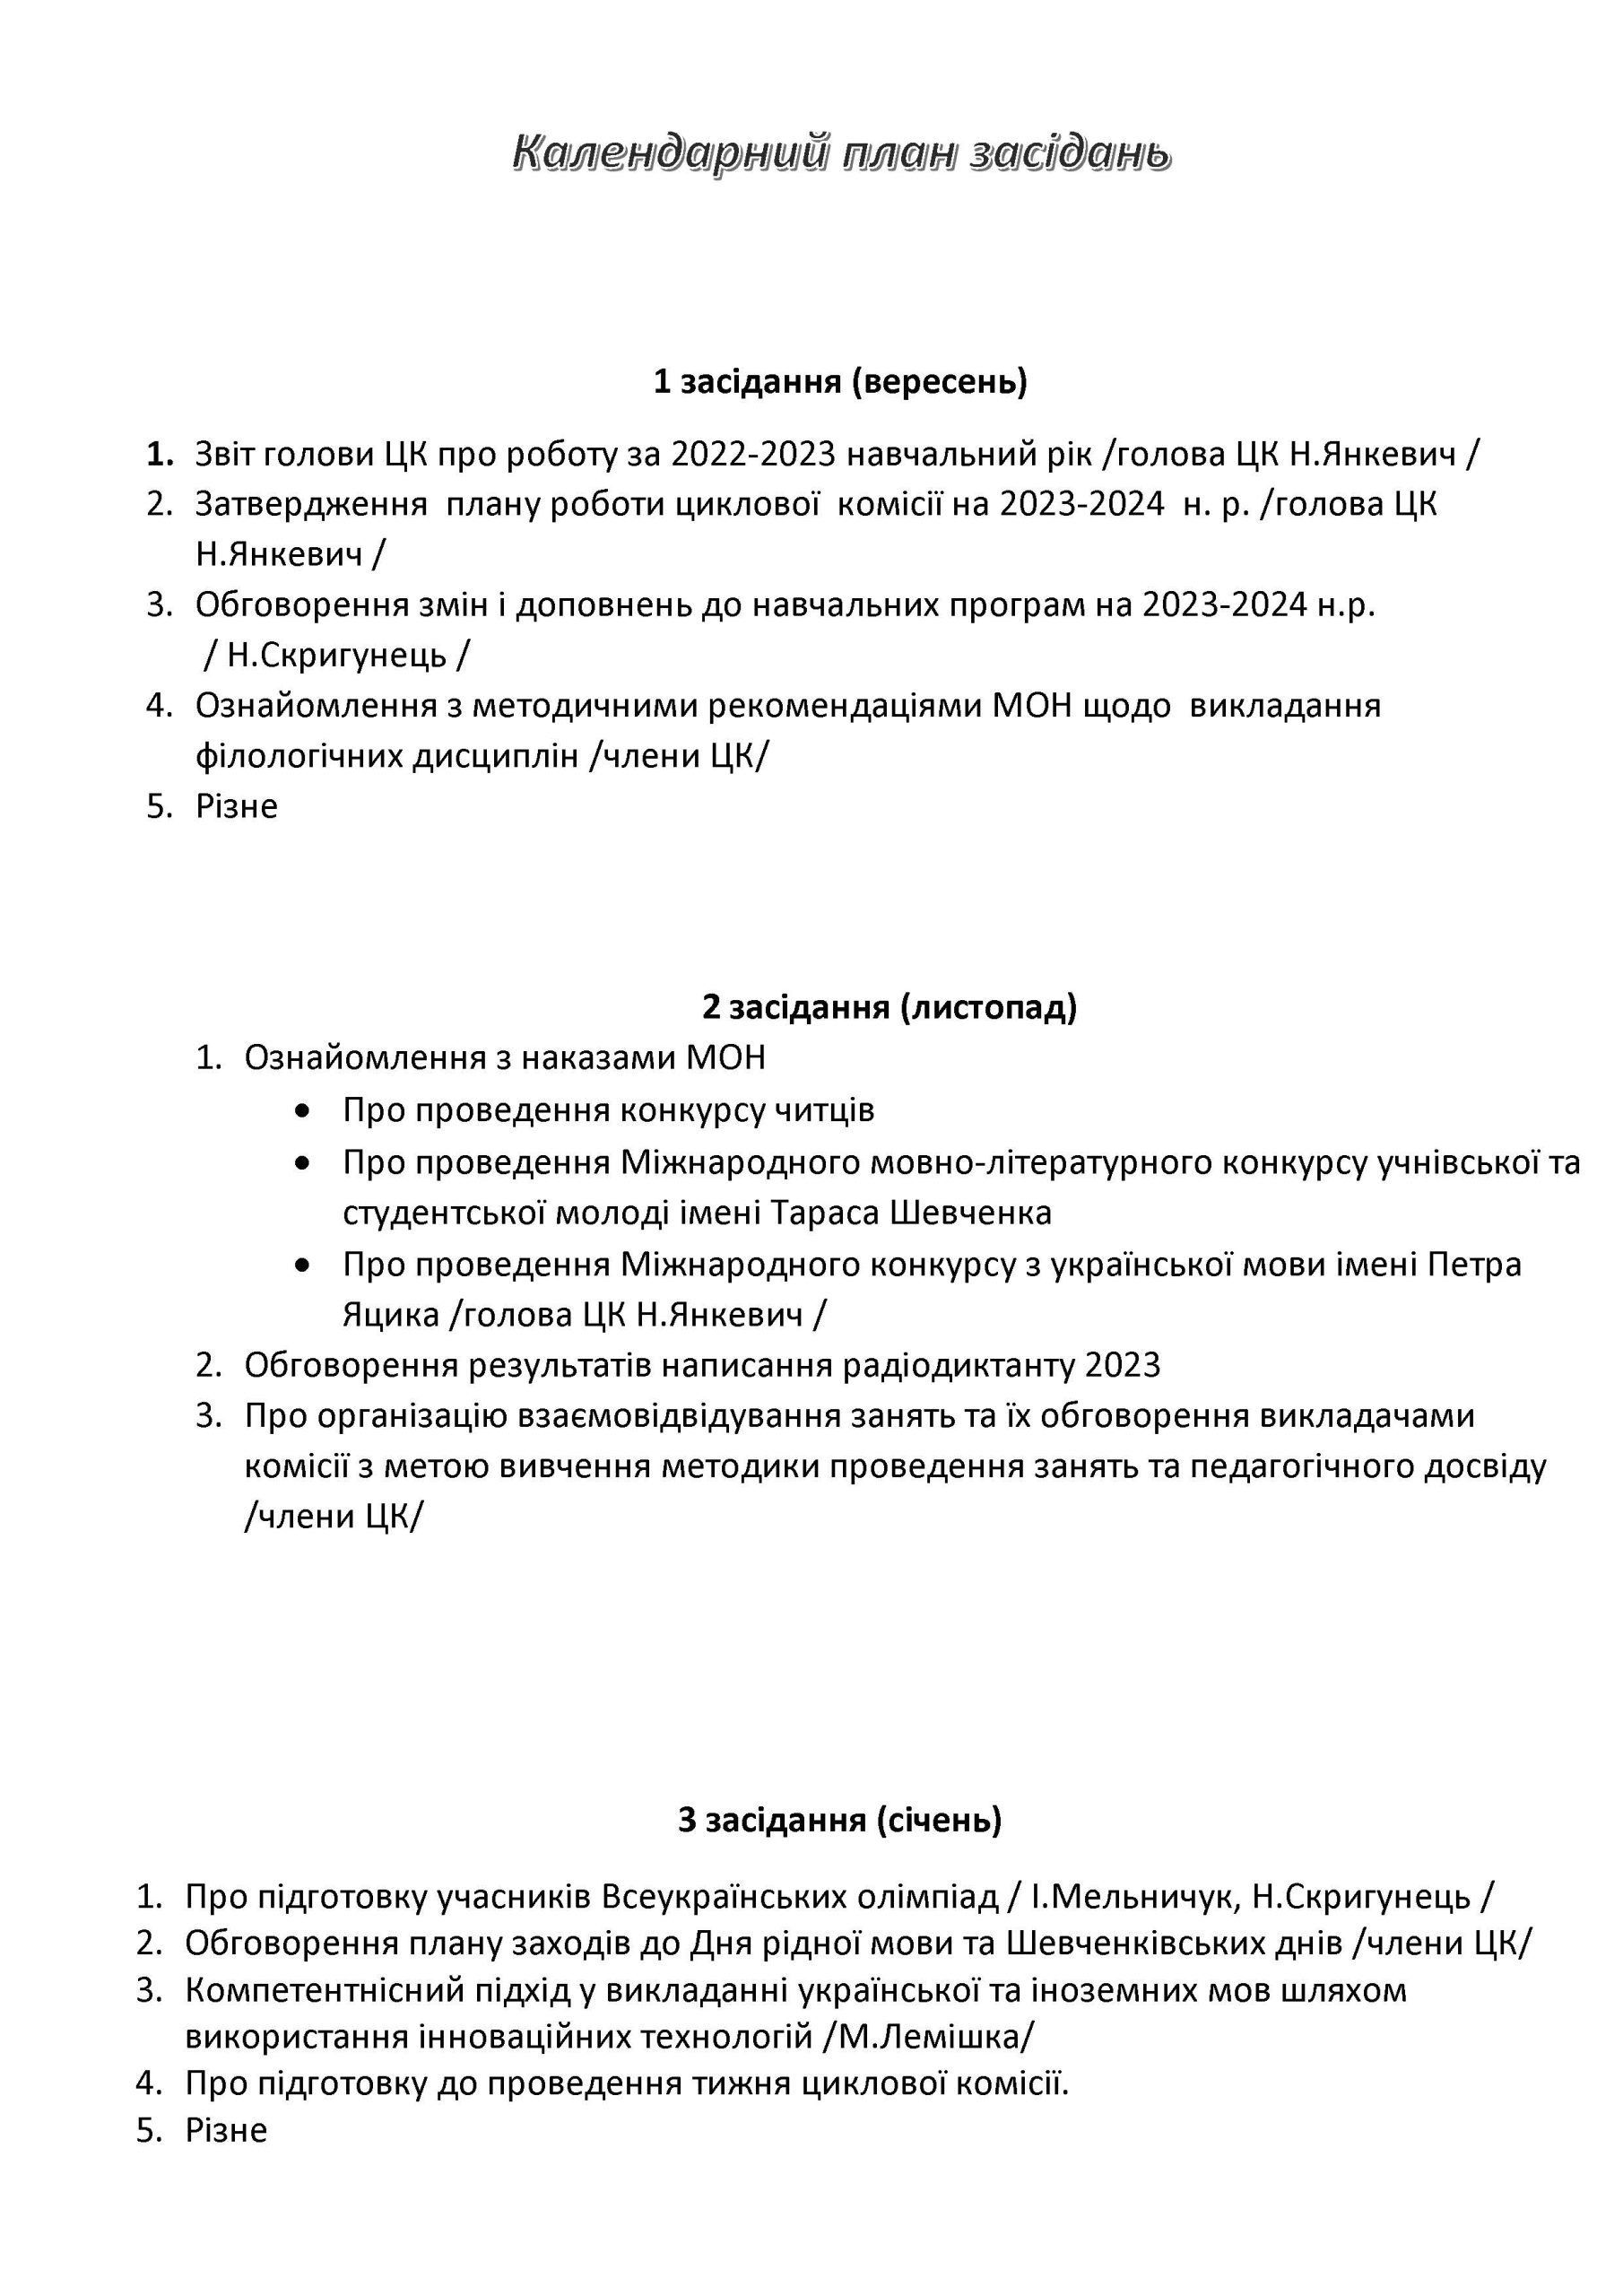 план роботи ЦК на 2023-2024 нр_Сторінка_3